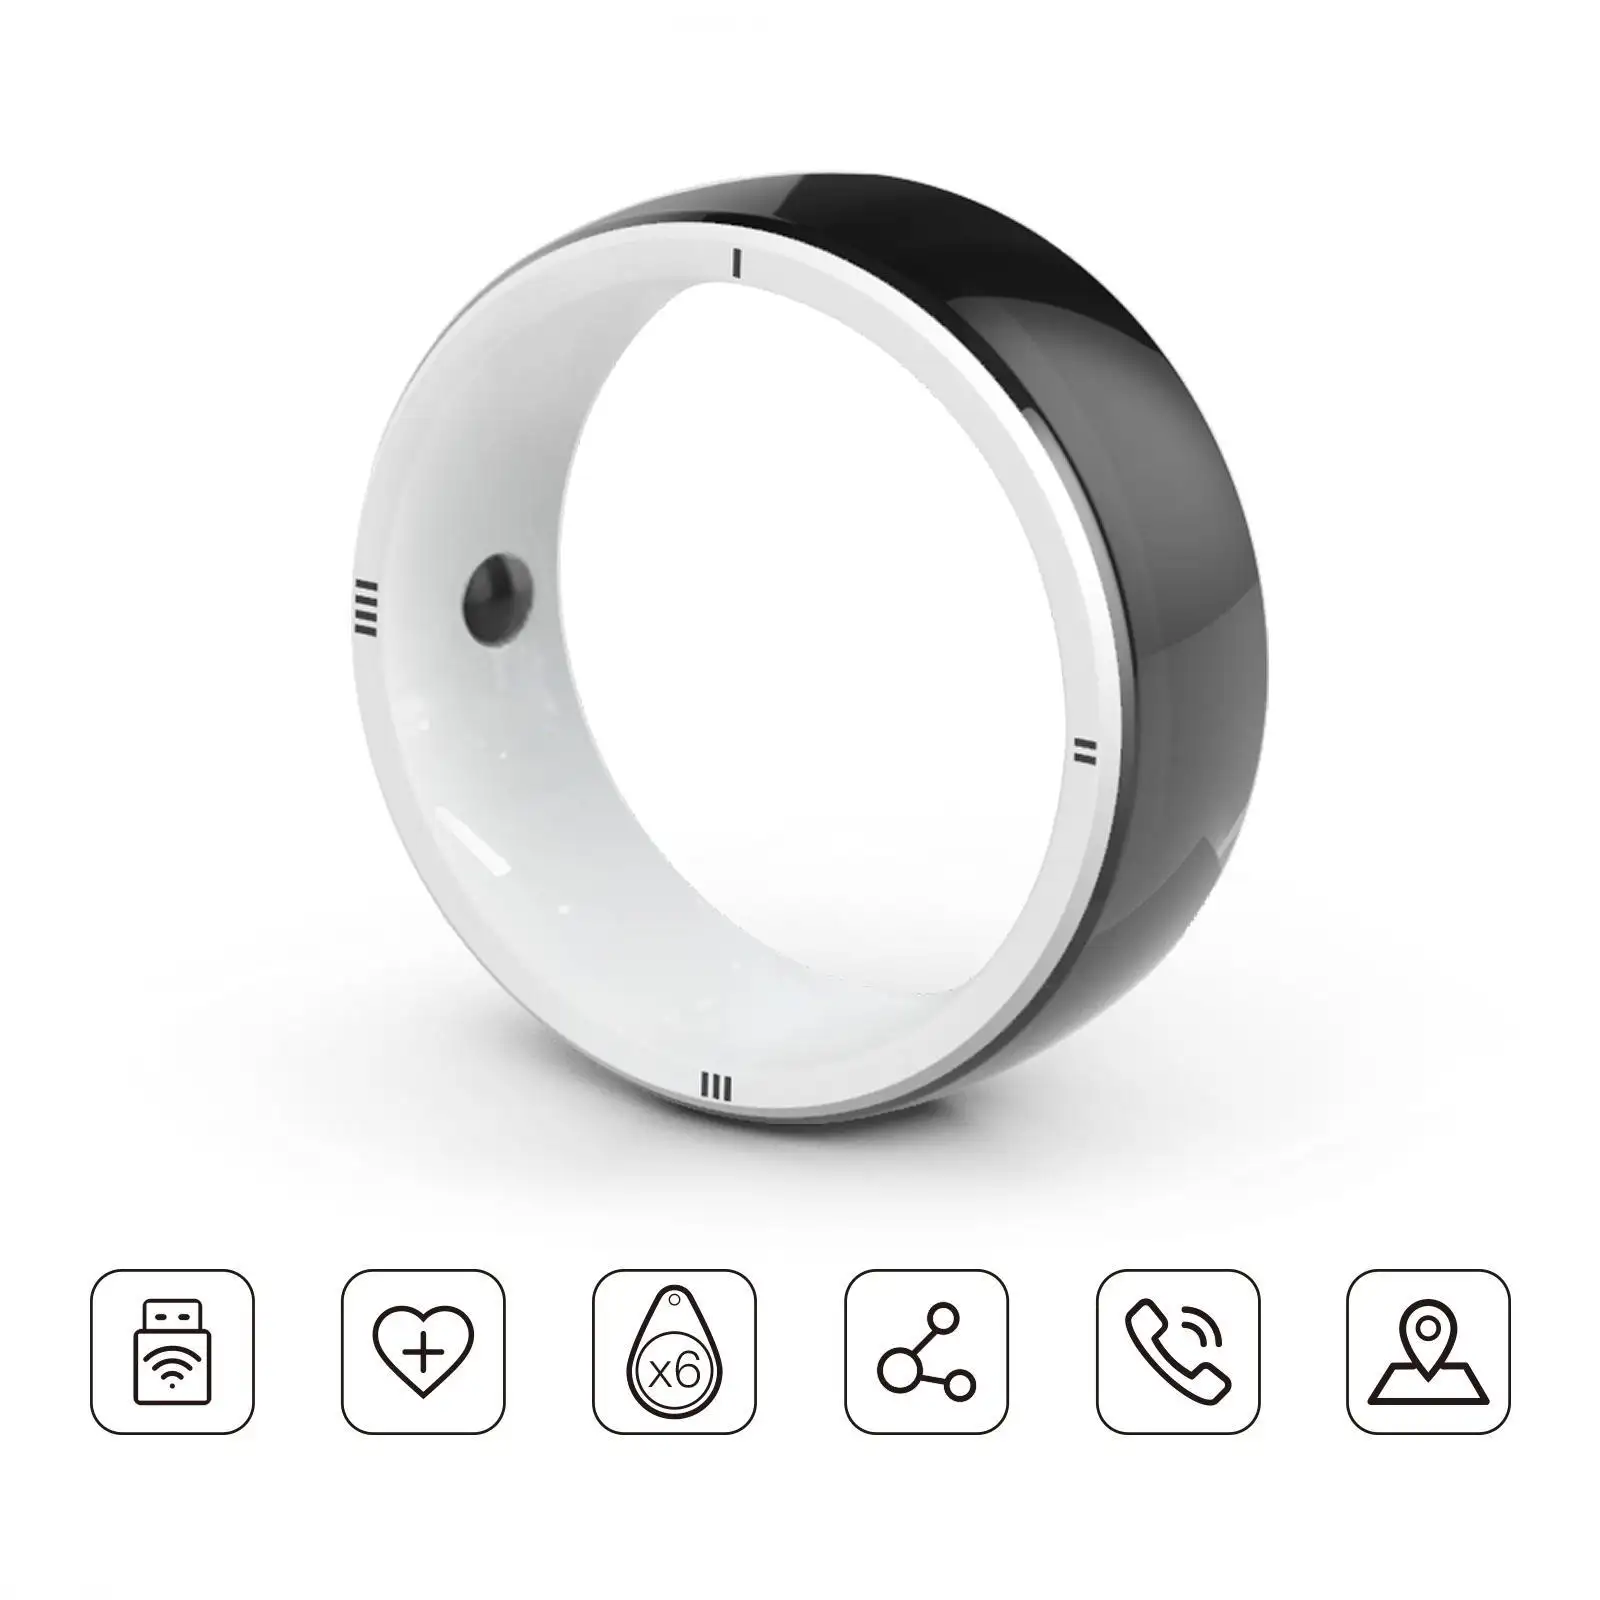 Anello intelligente JAKCOM R5 nuovo anello intelligente miglior regalo con custodia midi pc scart a av soundbar 500 monitor neo geo mini stick orsacchiotto